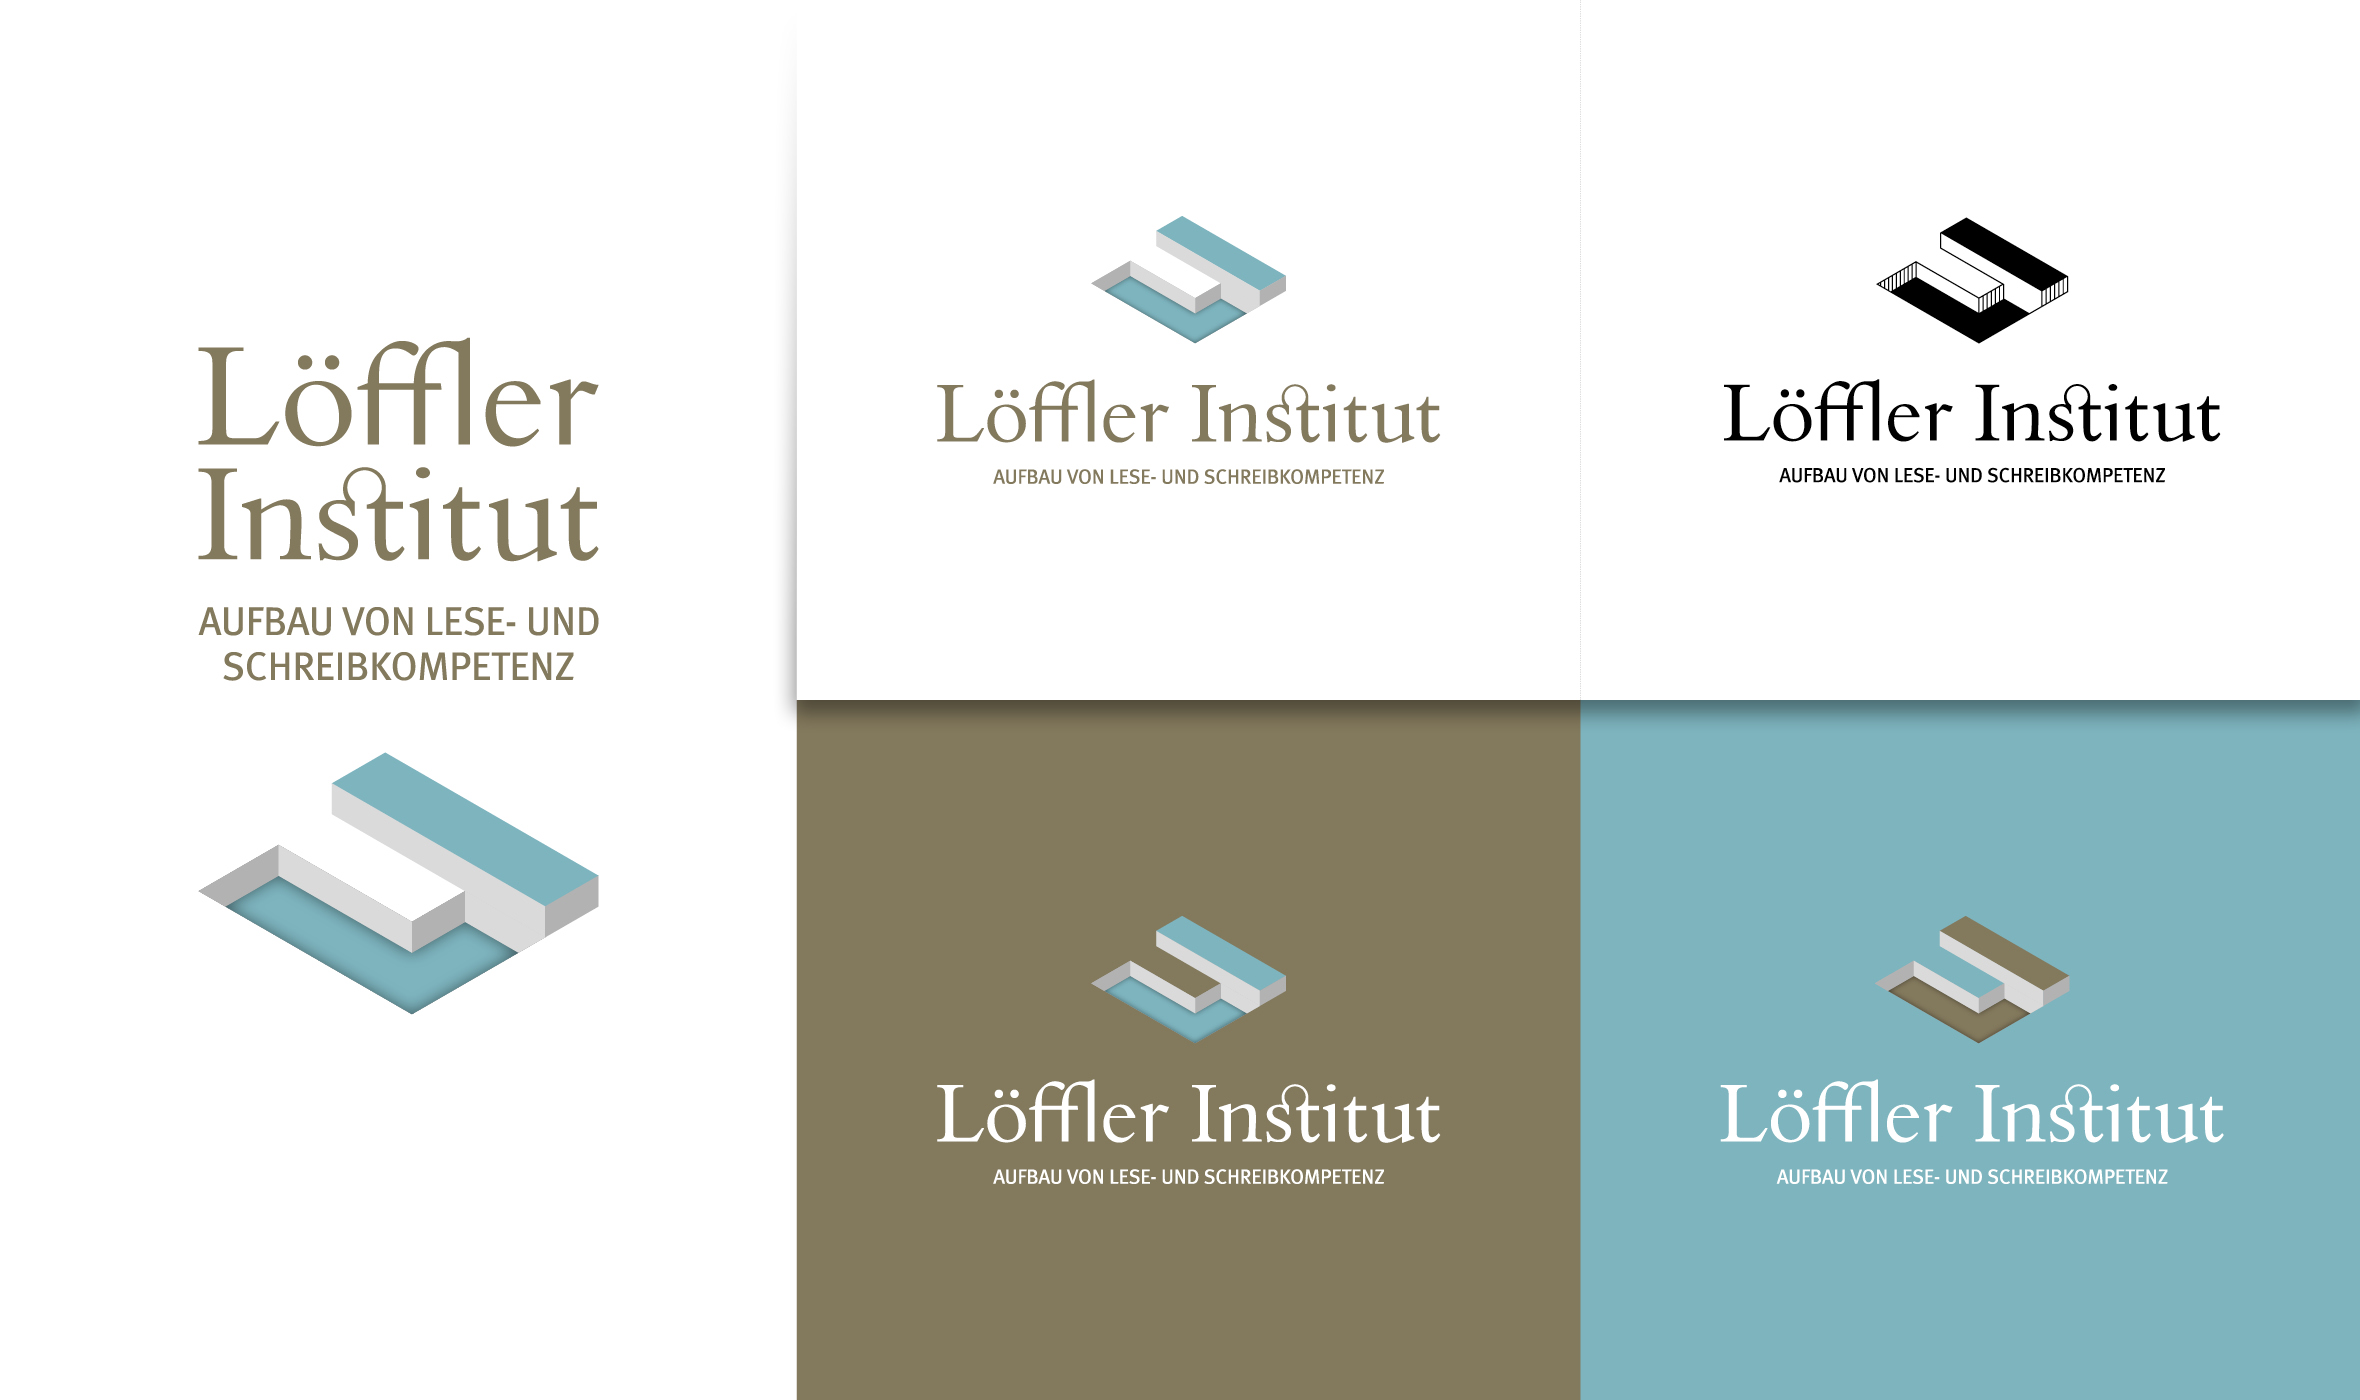 Löffler Institut, Aufbau von Lese- und Schreibkompetenz, Logoentwicklung, Corporate Design, Kommunikationskonzept, Logo, Wort-Bildmarke, Farbversionen, 